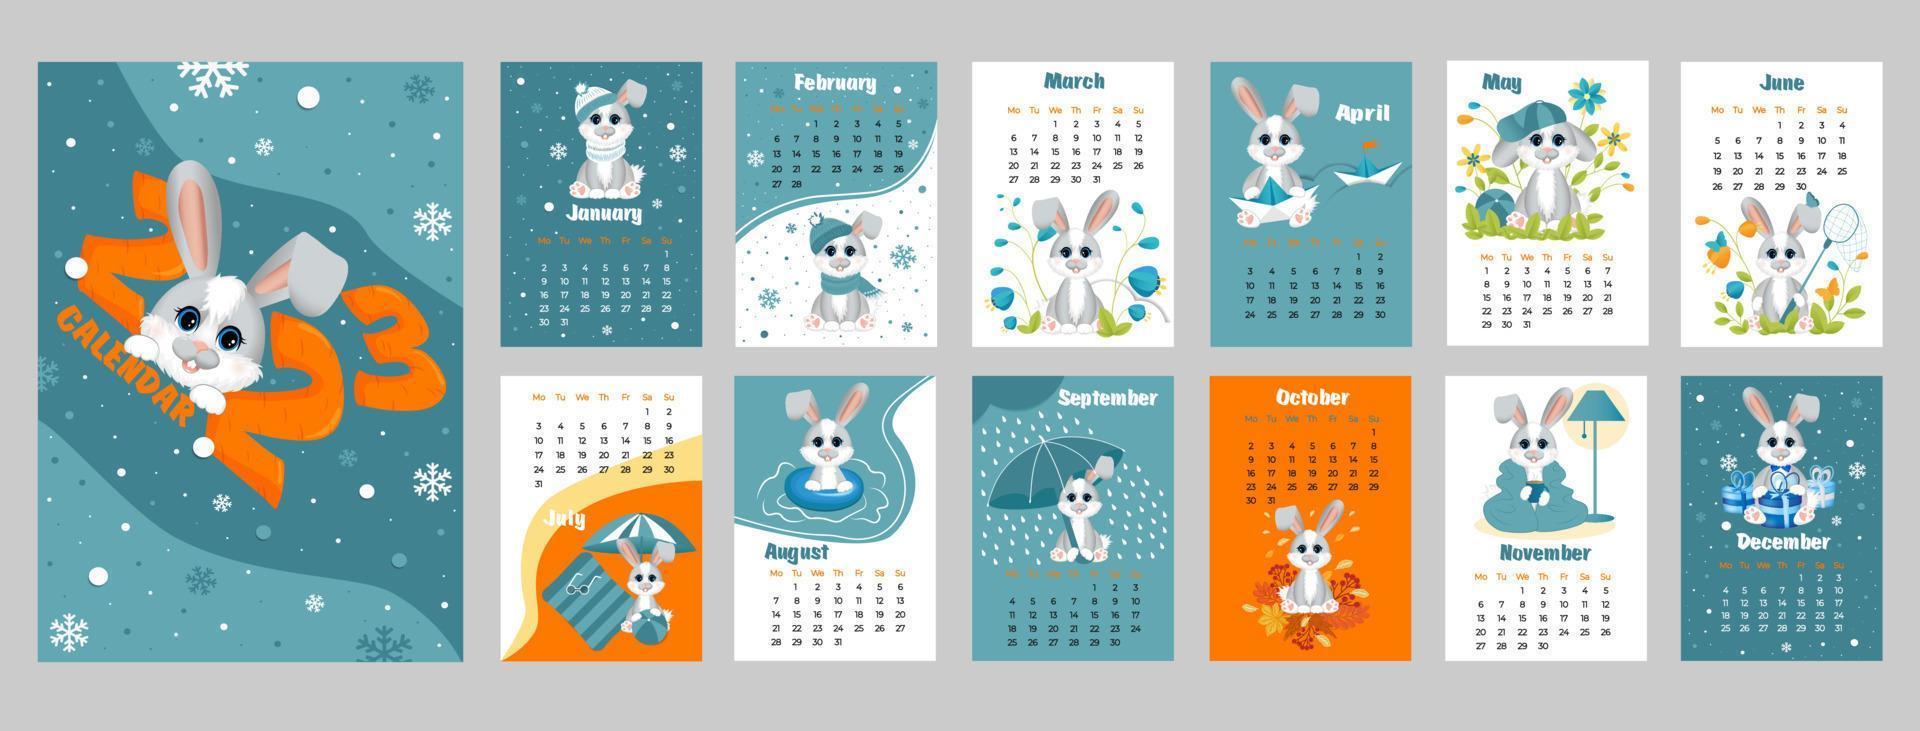 Kalender 2023 mit Symbol des Jahres Hase oder Kaninchen. süßer kleiner hase oder kaninchen im cartoon-stil. Woche beginnt am Montag. vektor